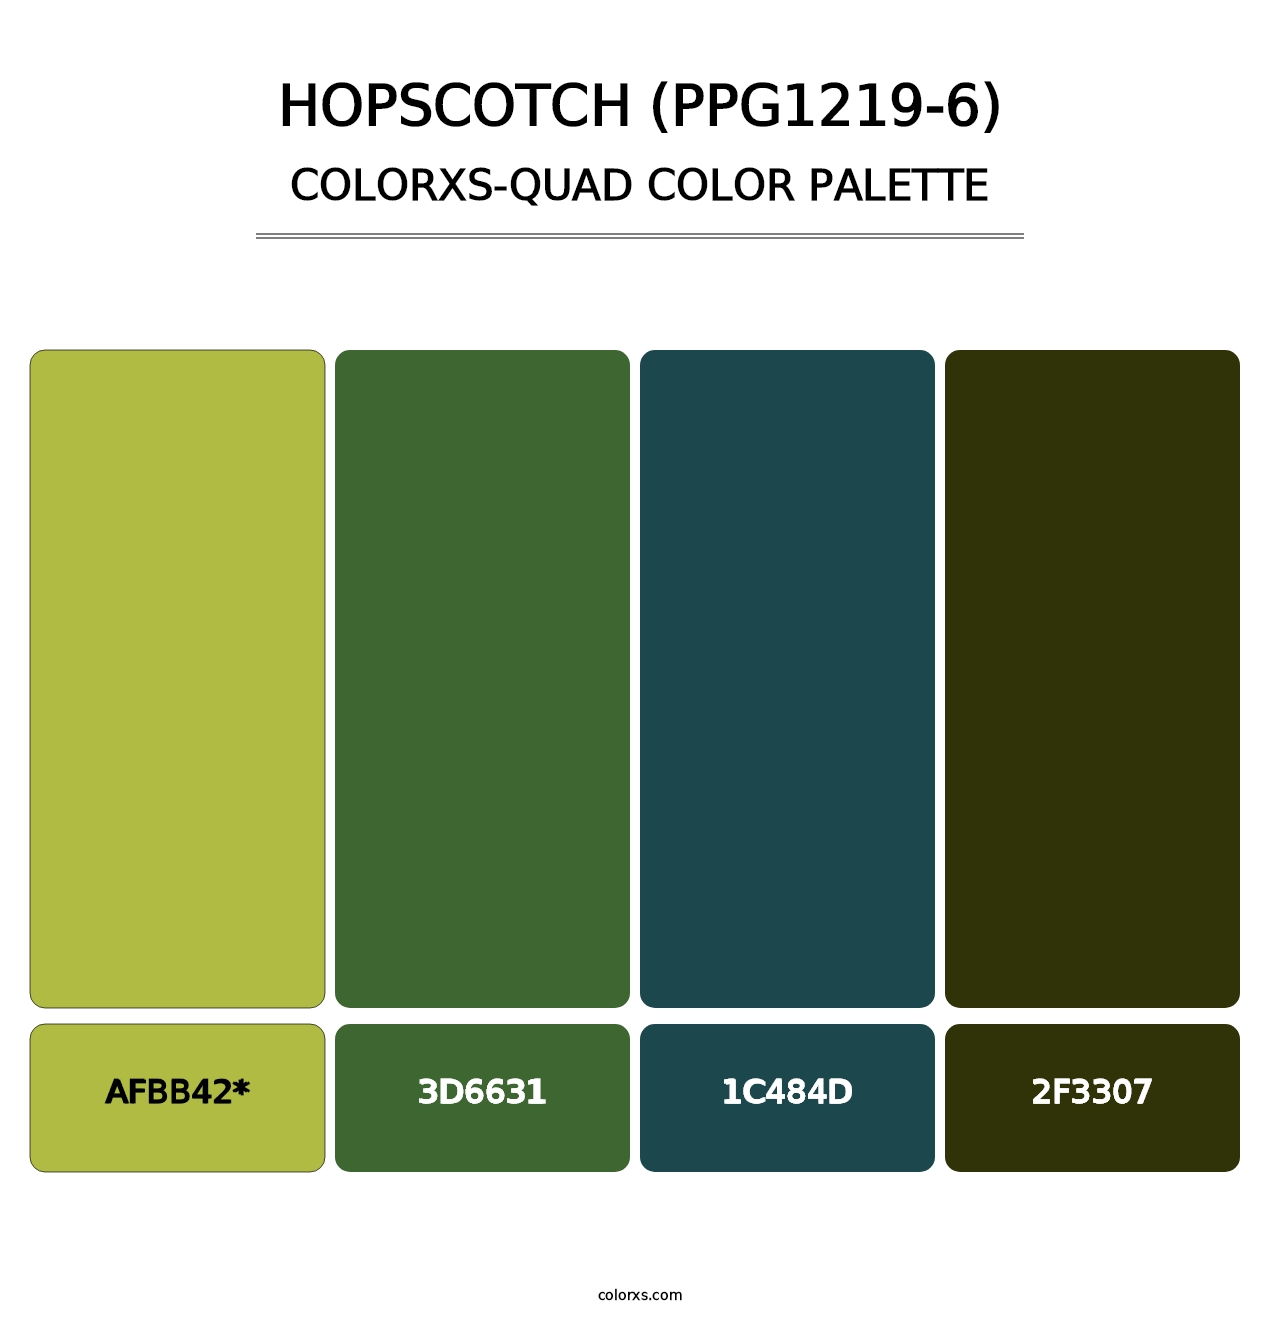 Hopscotch (PPG1219-6) - Colorxs Quad Palette